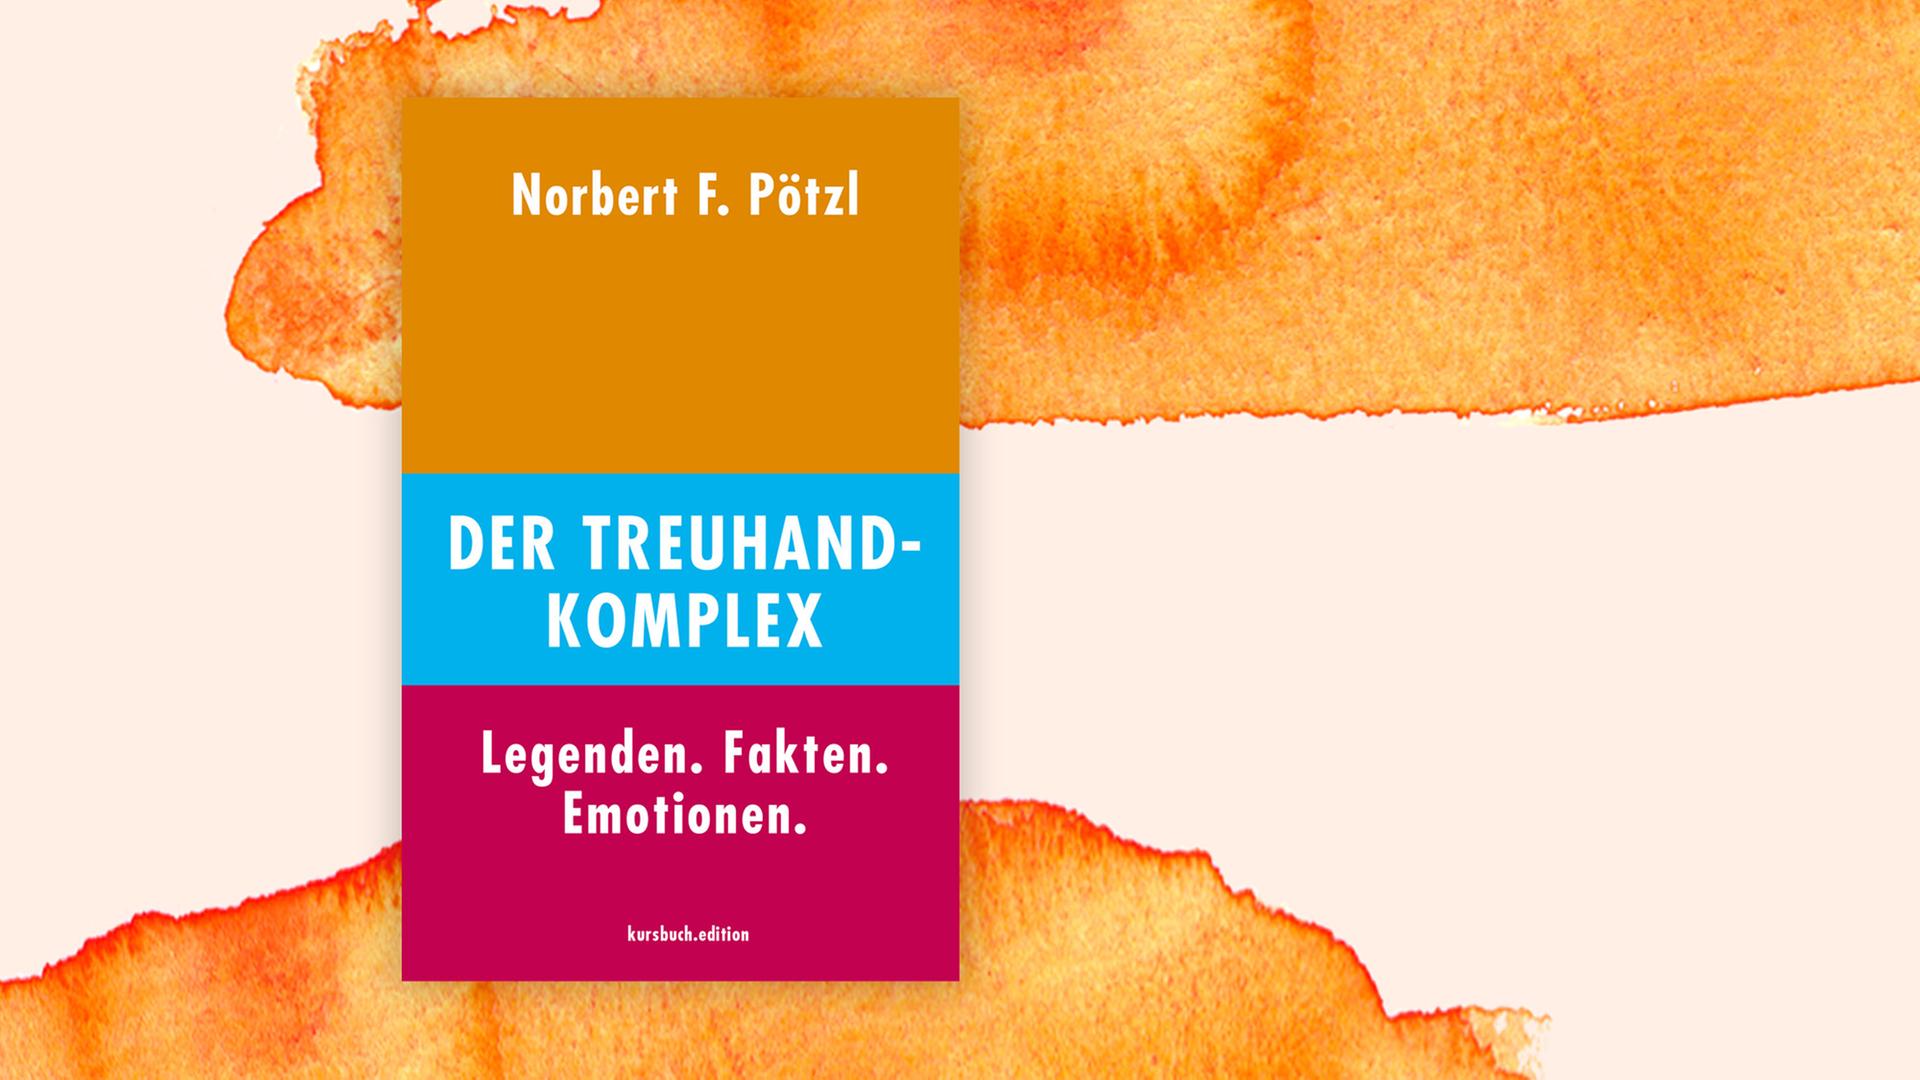 Buchcover zu "Der Treuhand-Komplex" von Norbert F. Pötzl.